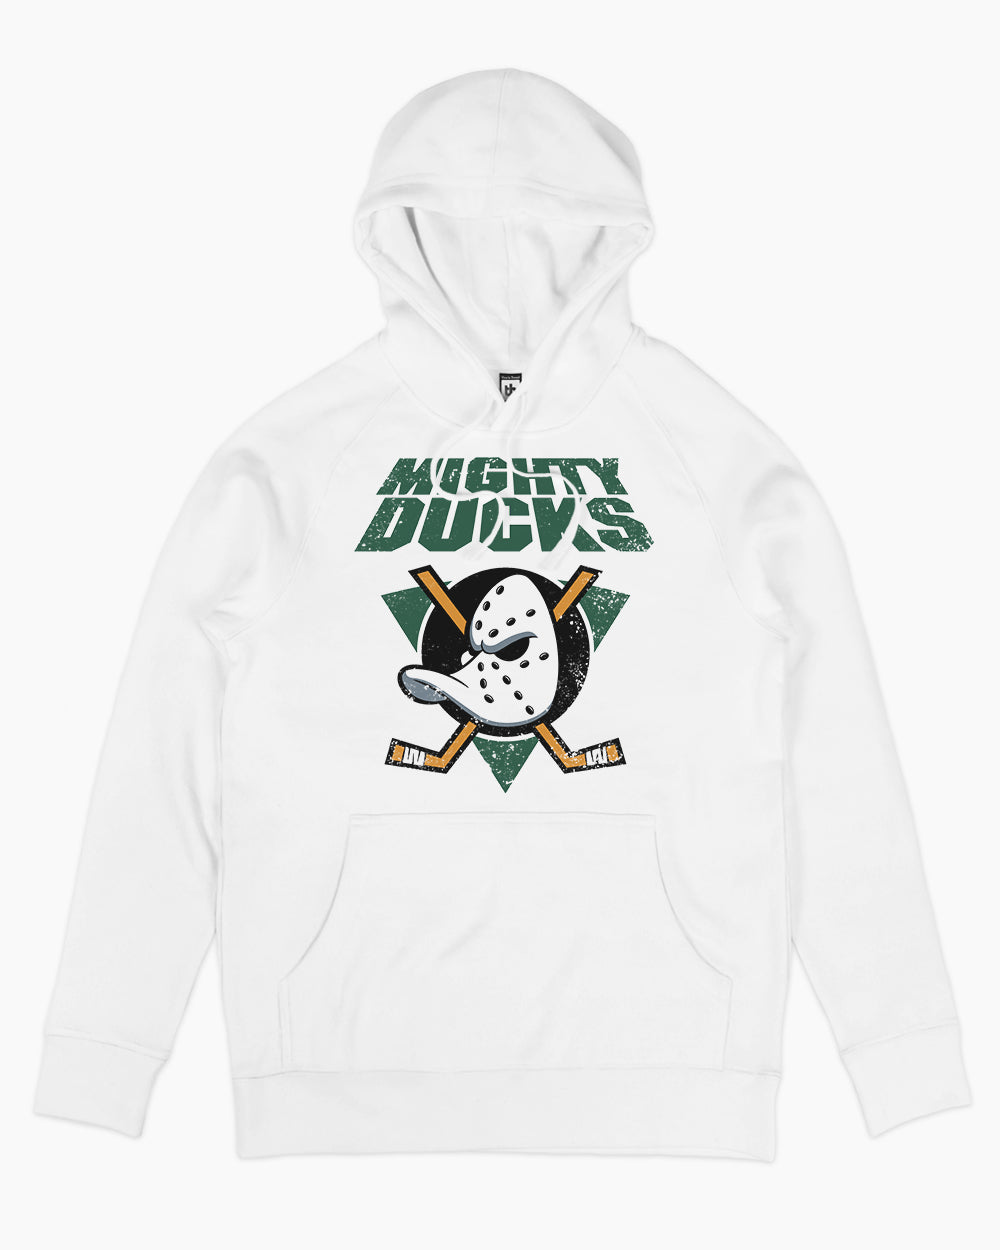 Get Buy Mighty Ducks Hoodie